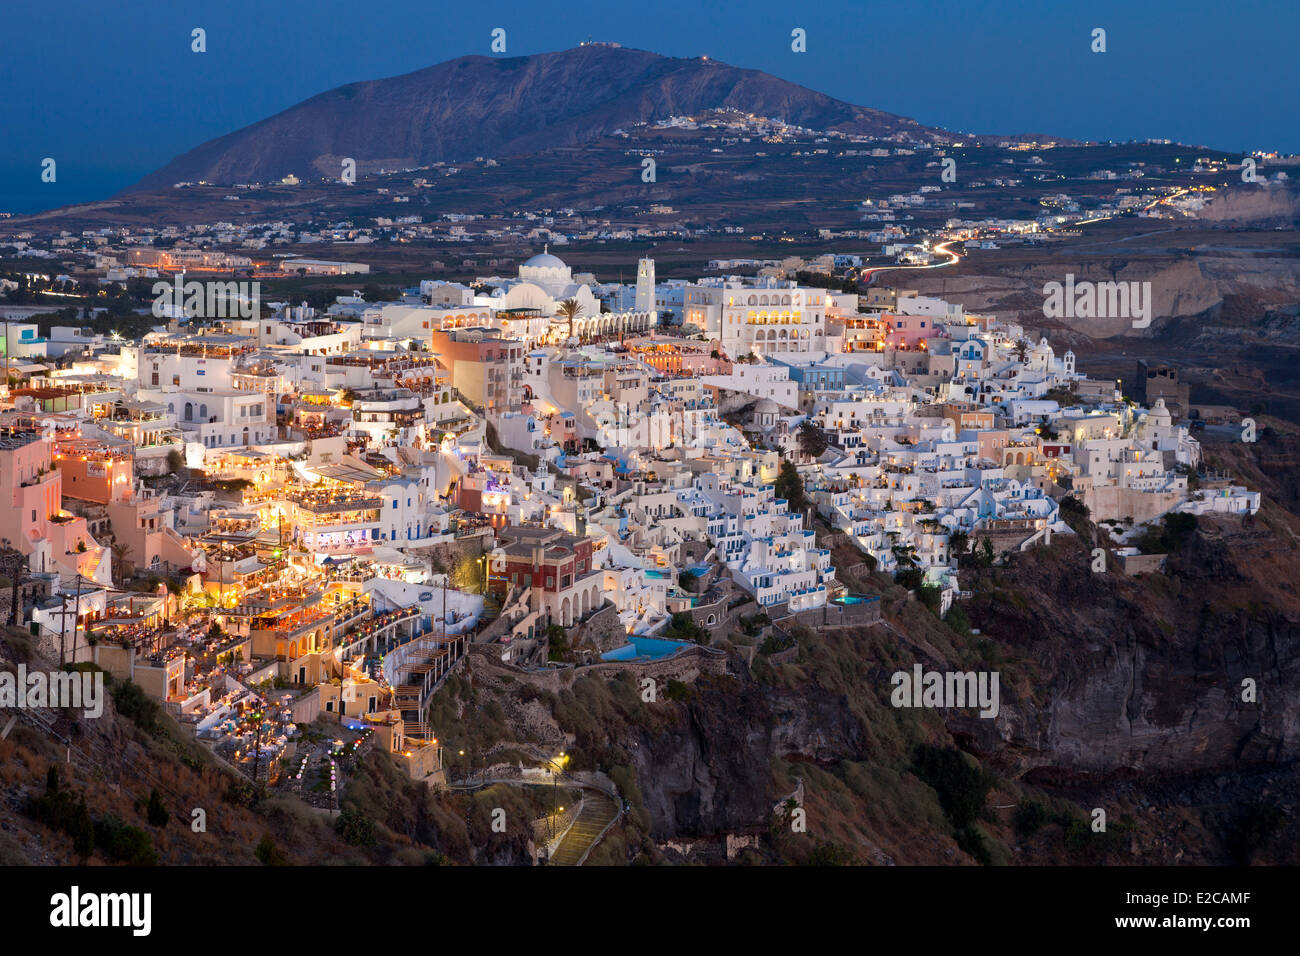 Griechenland, Cyclades, Ägäis, Santorini (Thira oder Thera), das Dorf von Thira Hunged am oberen Rand der caldera Stockfoto